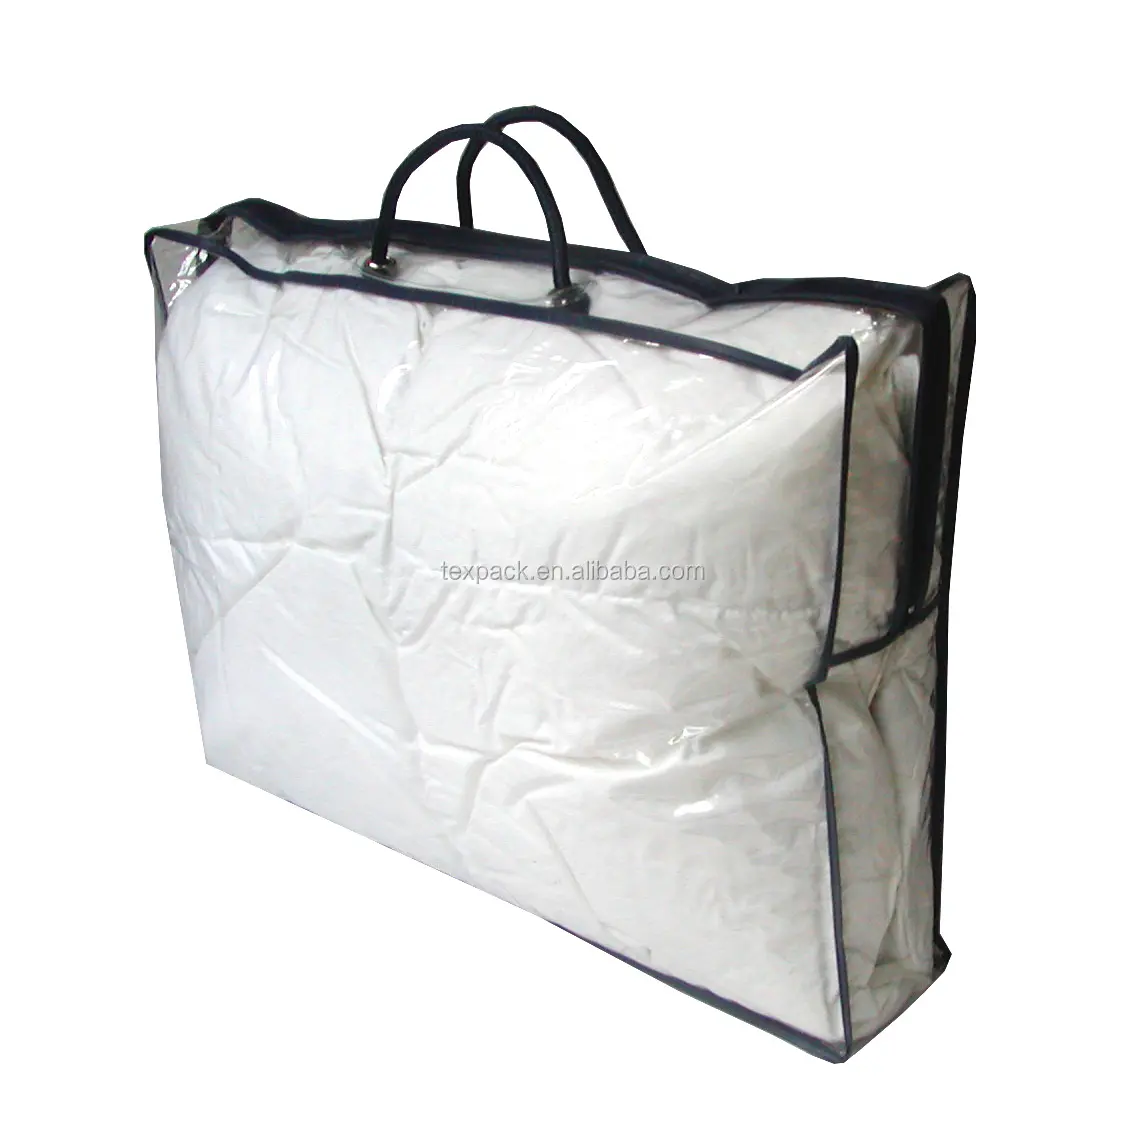 أغطية وسائد وأكياس وسائد بلاستيكية عالية الجودة مقاومة للغبار ومضادة للماء من Texpack حقائب تعبئة بلاستيكية لتخزين أغراض التخزين